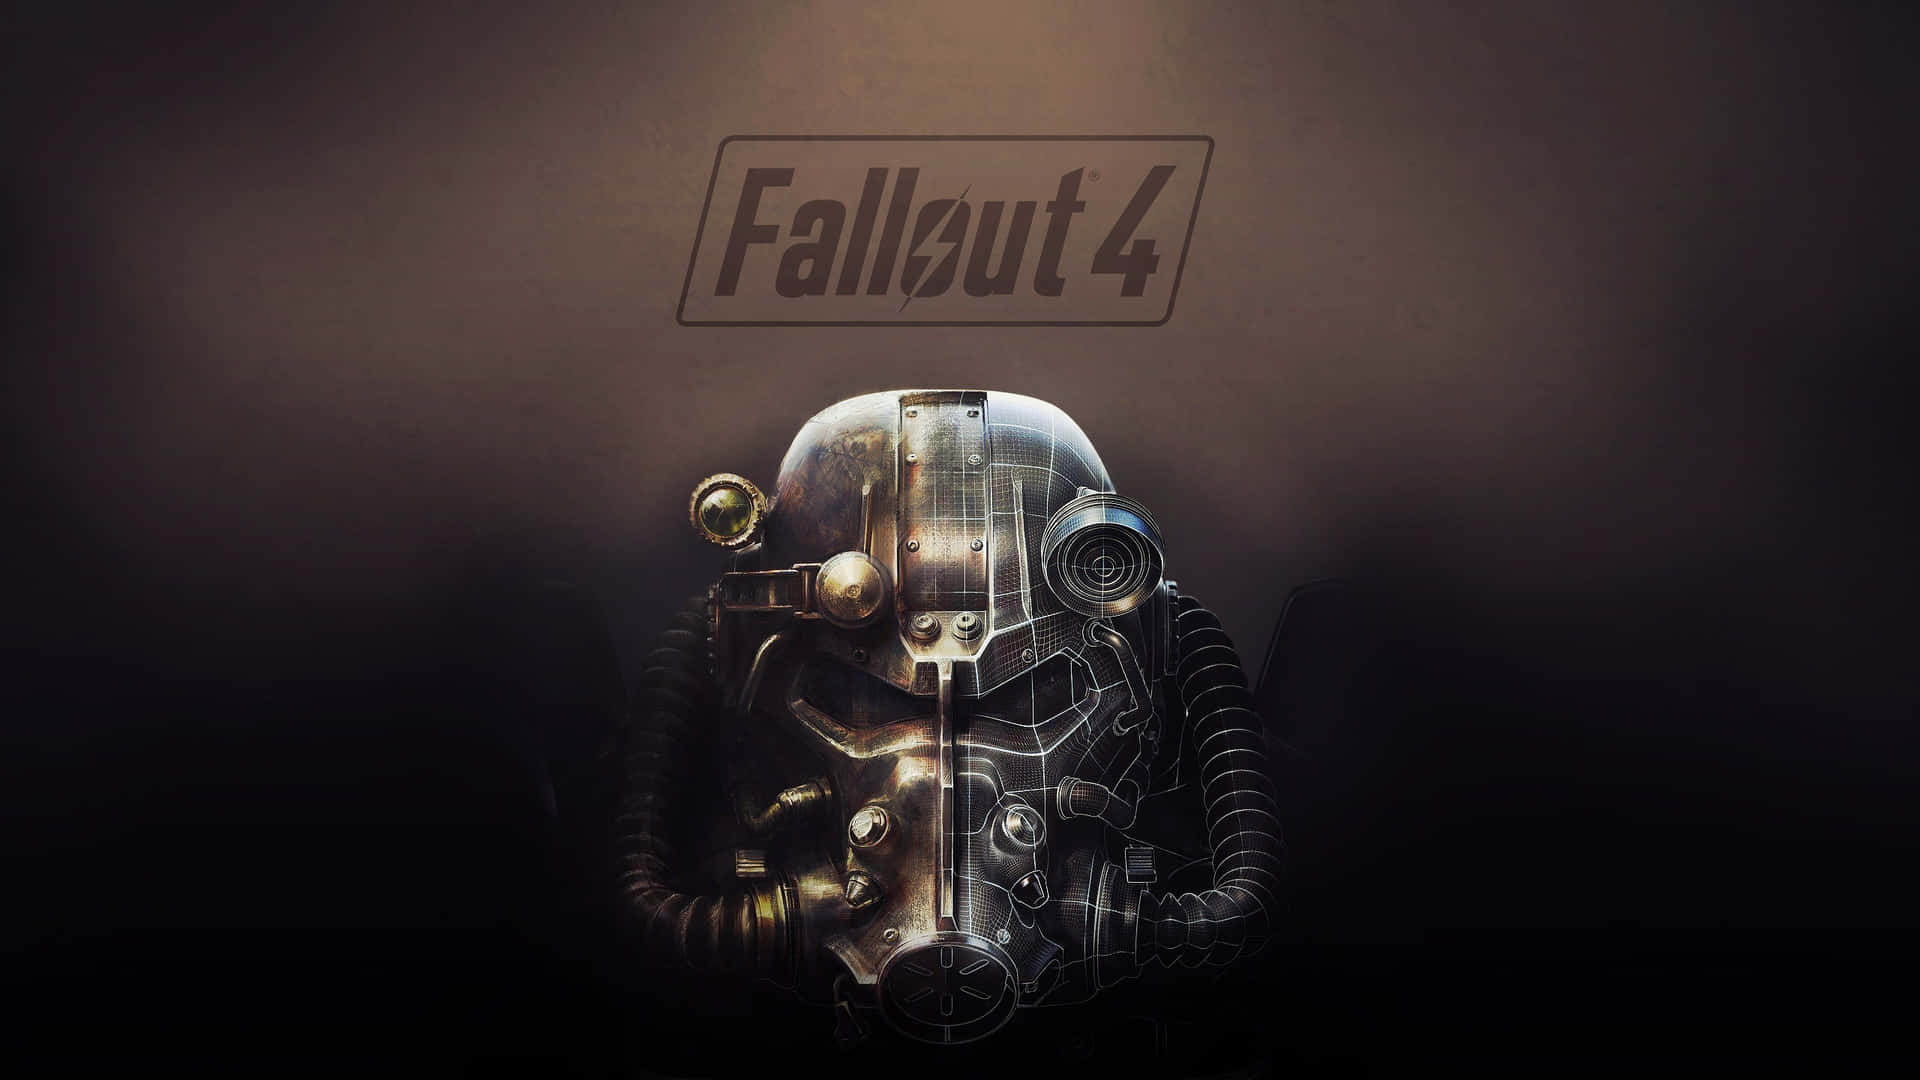 Fallout4 Bakgrundsbild - Fallout 4 Bakgrundsbild Wallpaper